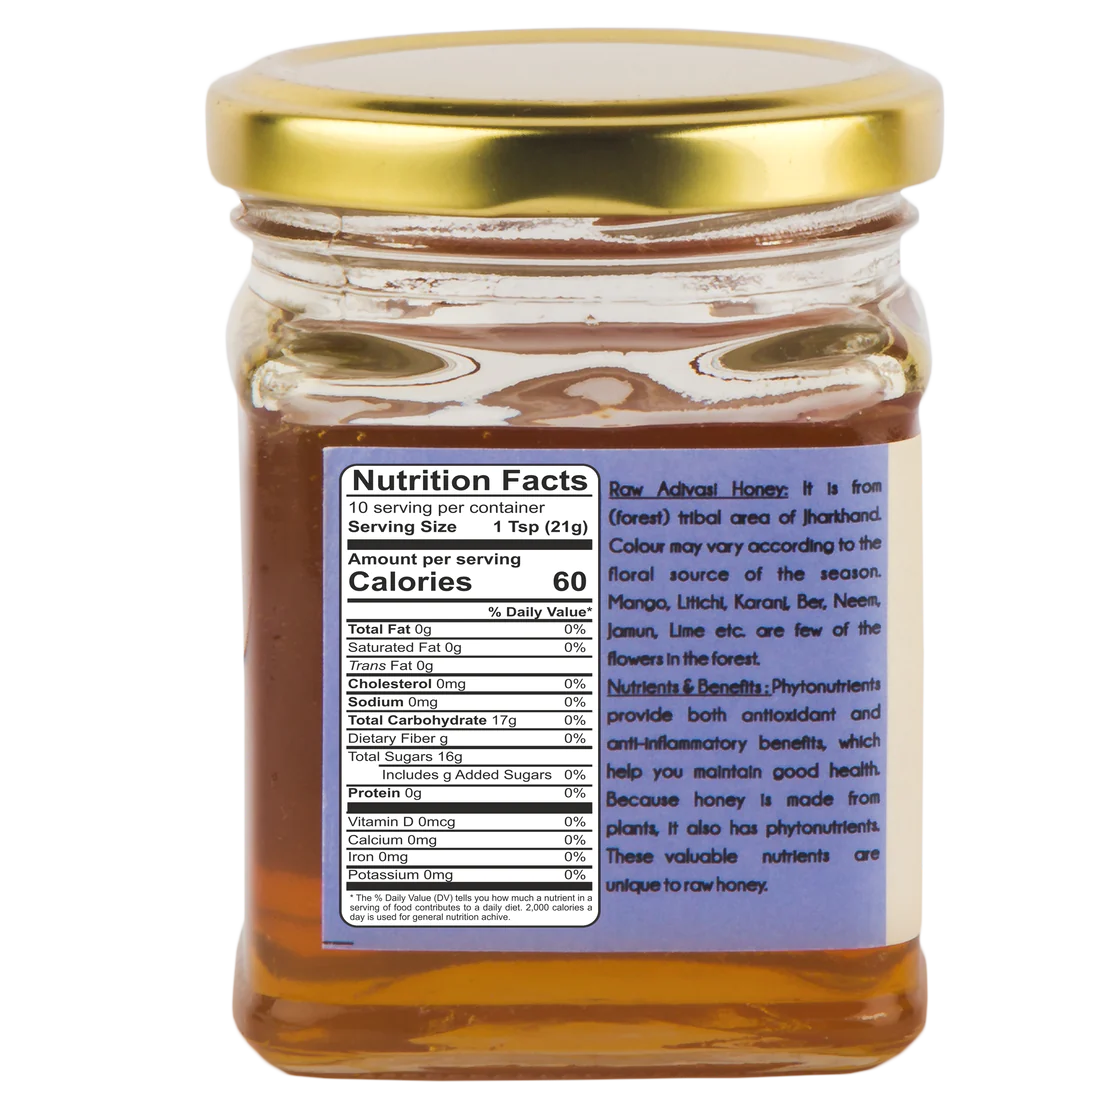 Praakritik – Adivasi Honey Natural